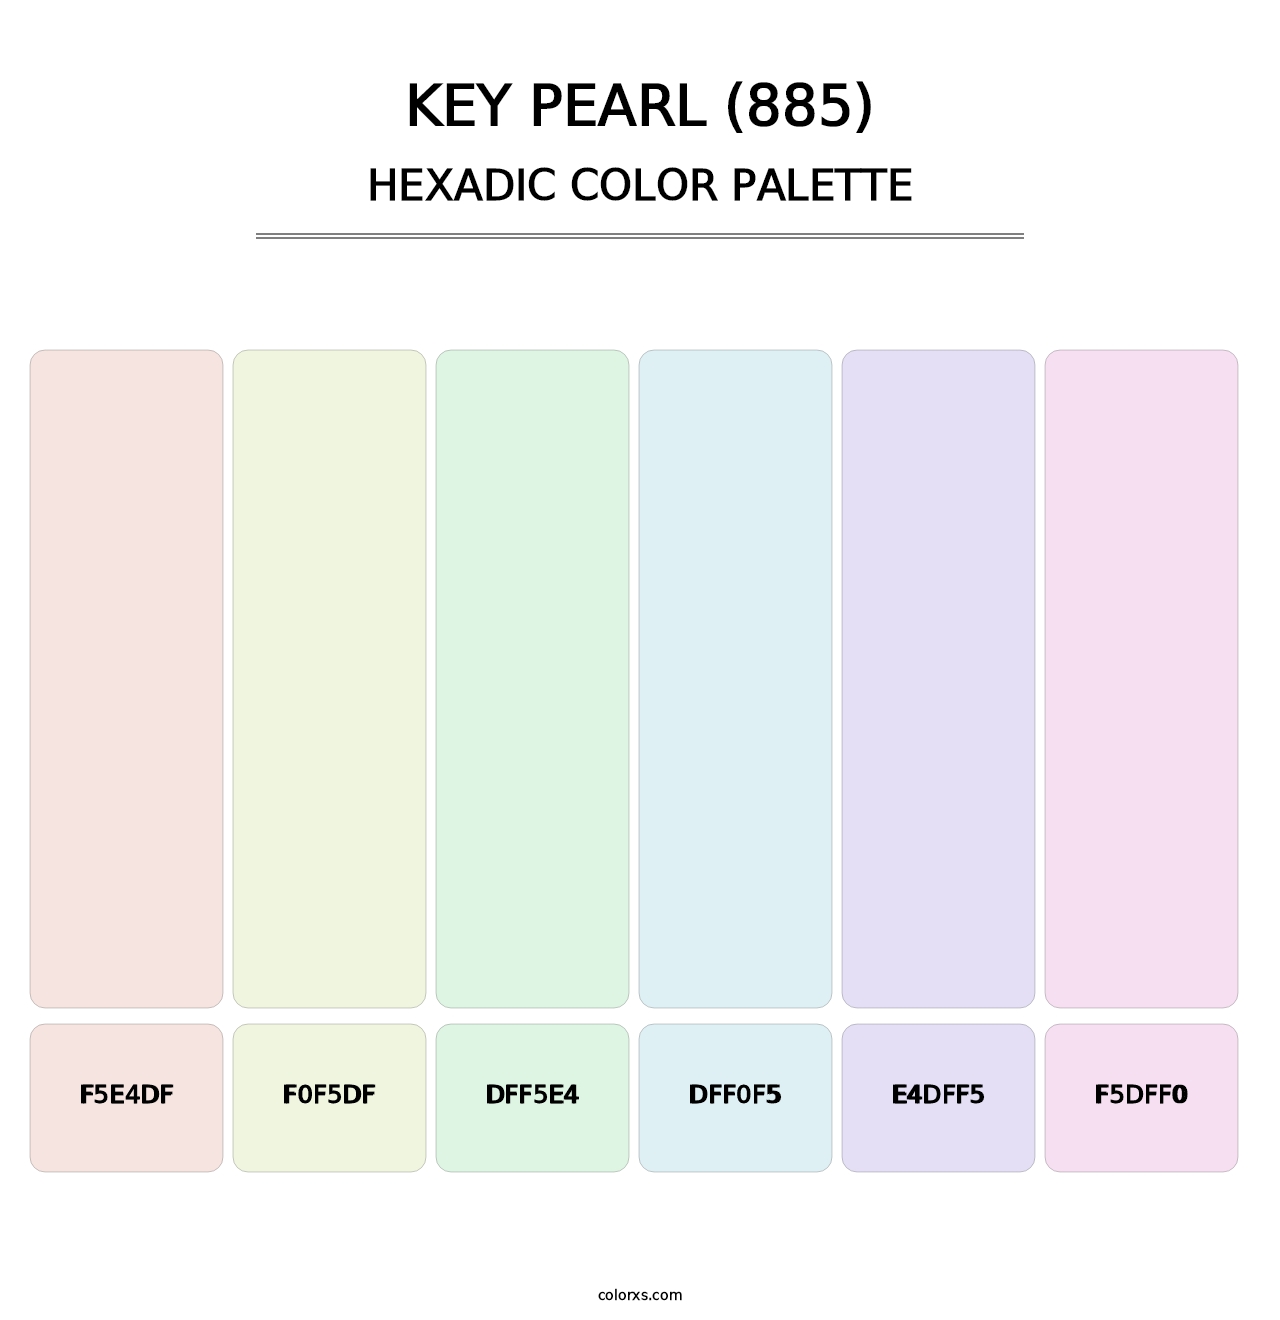 Key Pearl (885) - Hexadic Color Palette